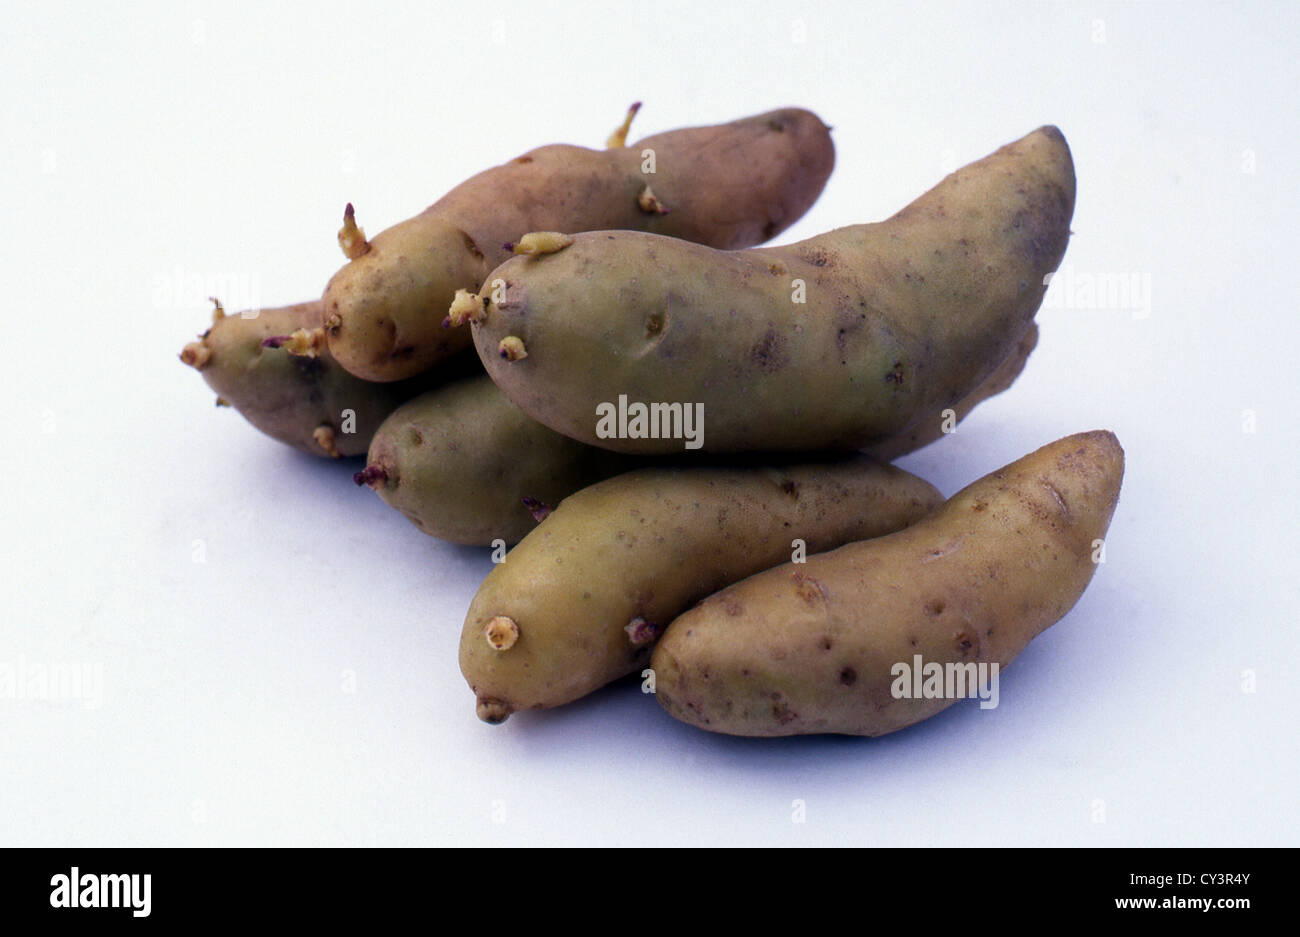 Stichprobe von sechs zweiten frühen Salat Kartoffel (Solanum Tuberosum) Sorte "Ratte" (Synonyme: "Asparge", "Cornichon") Knollen Stockfoto